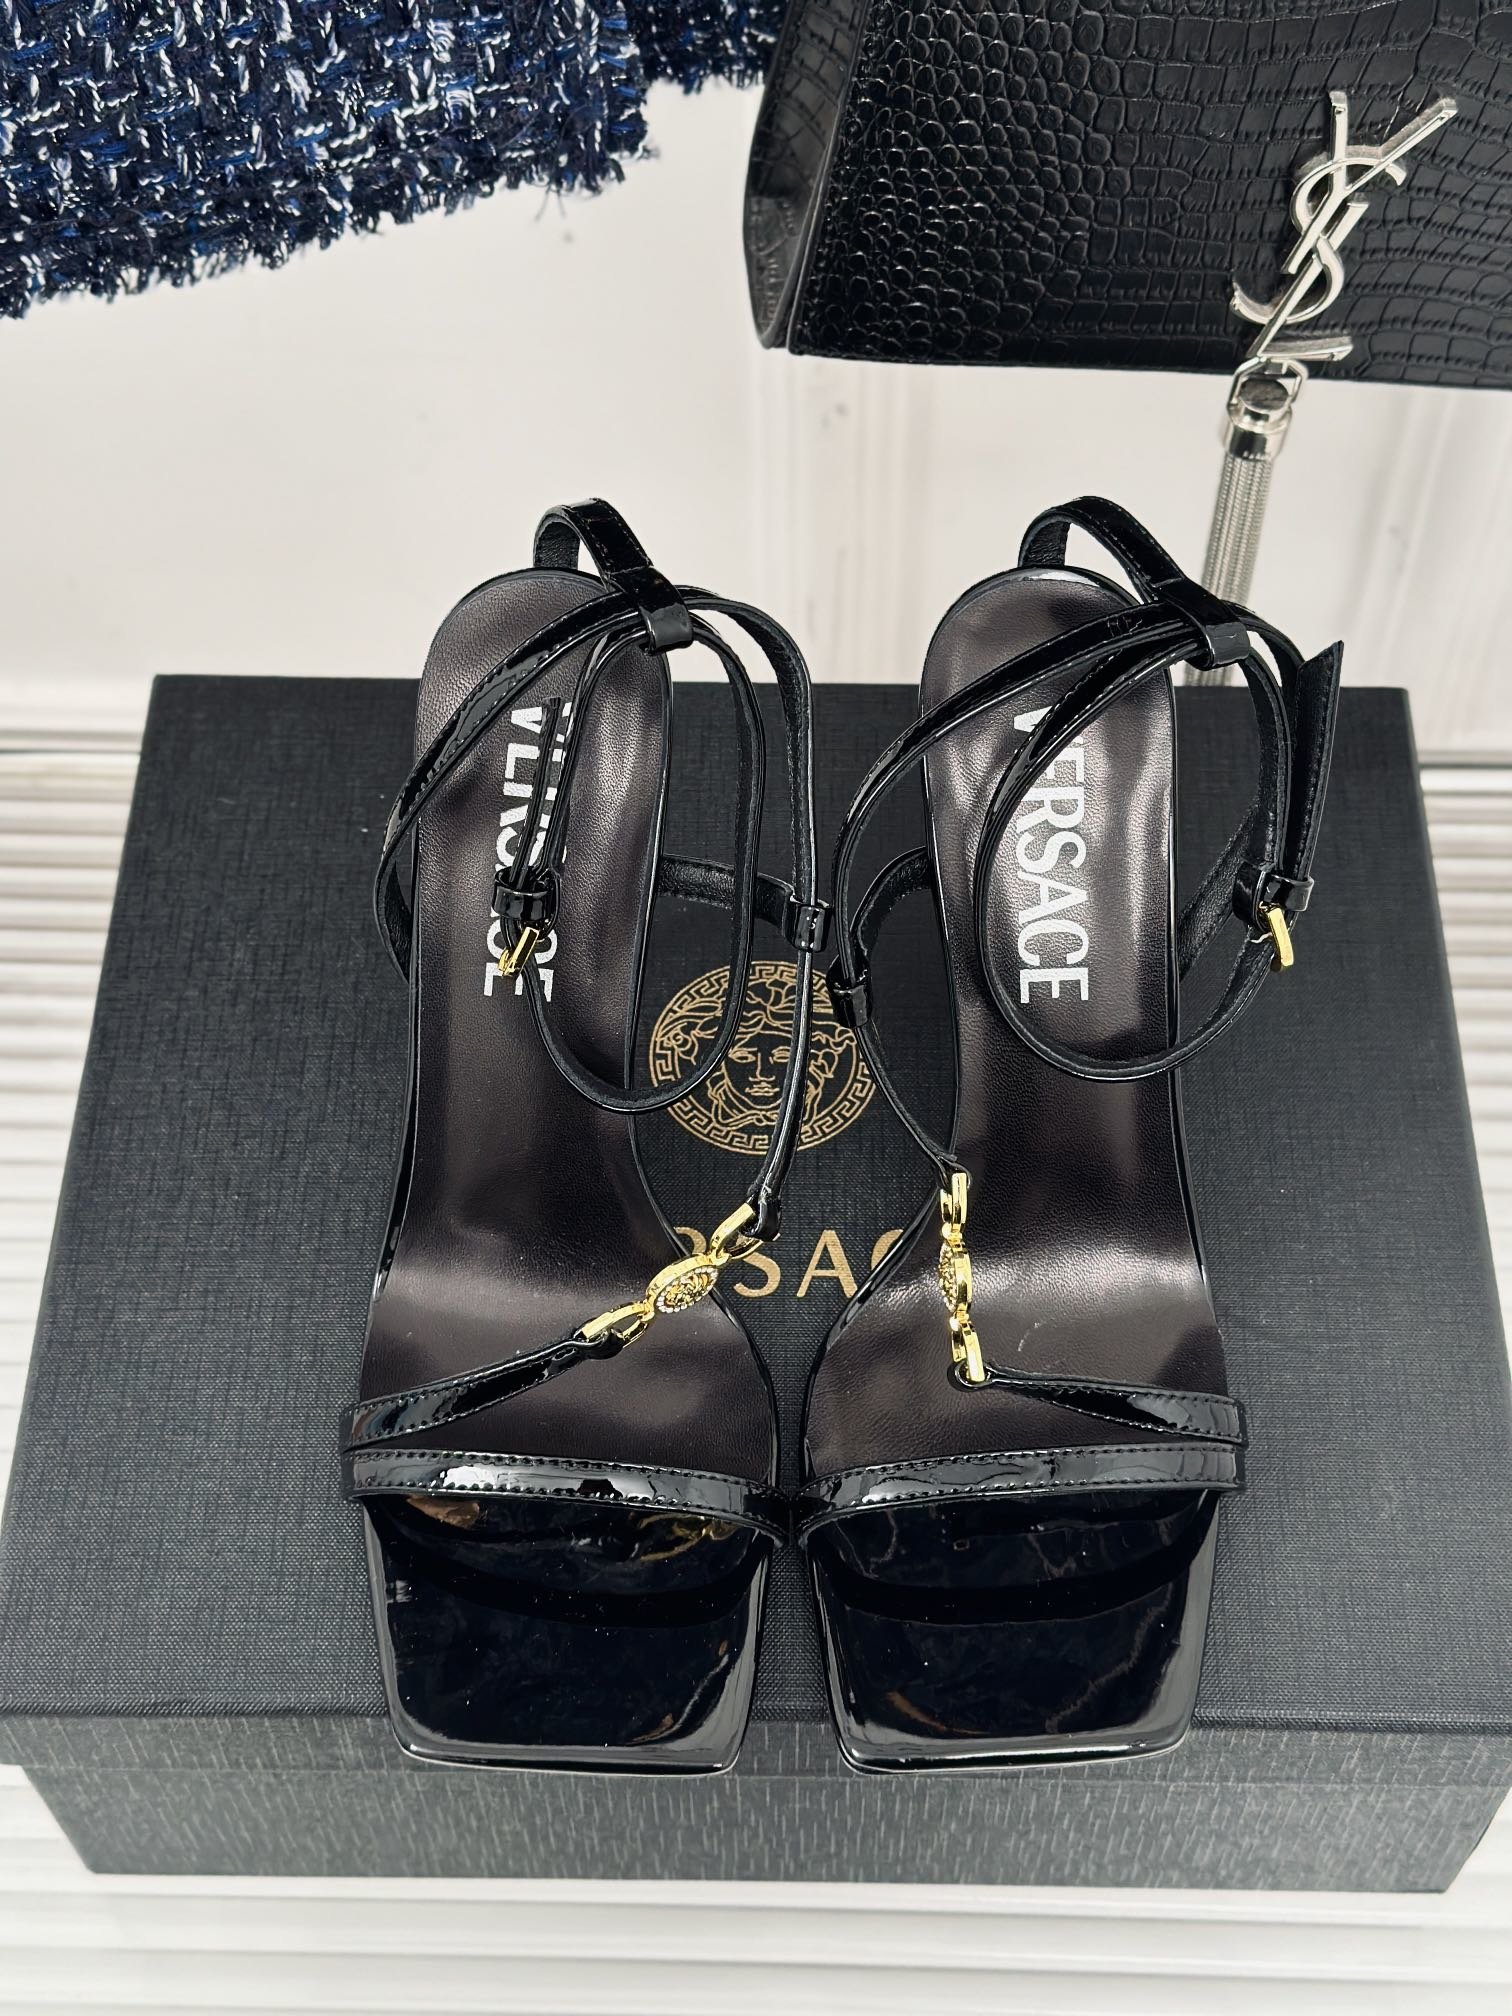 versace范思哲24S春夏新品金属美人头高跟凉鞋鞋面采用进口真丝/漆皮内里垫脚均为山羊皮跟高10.5